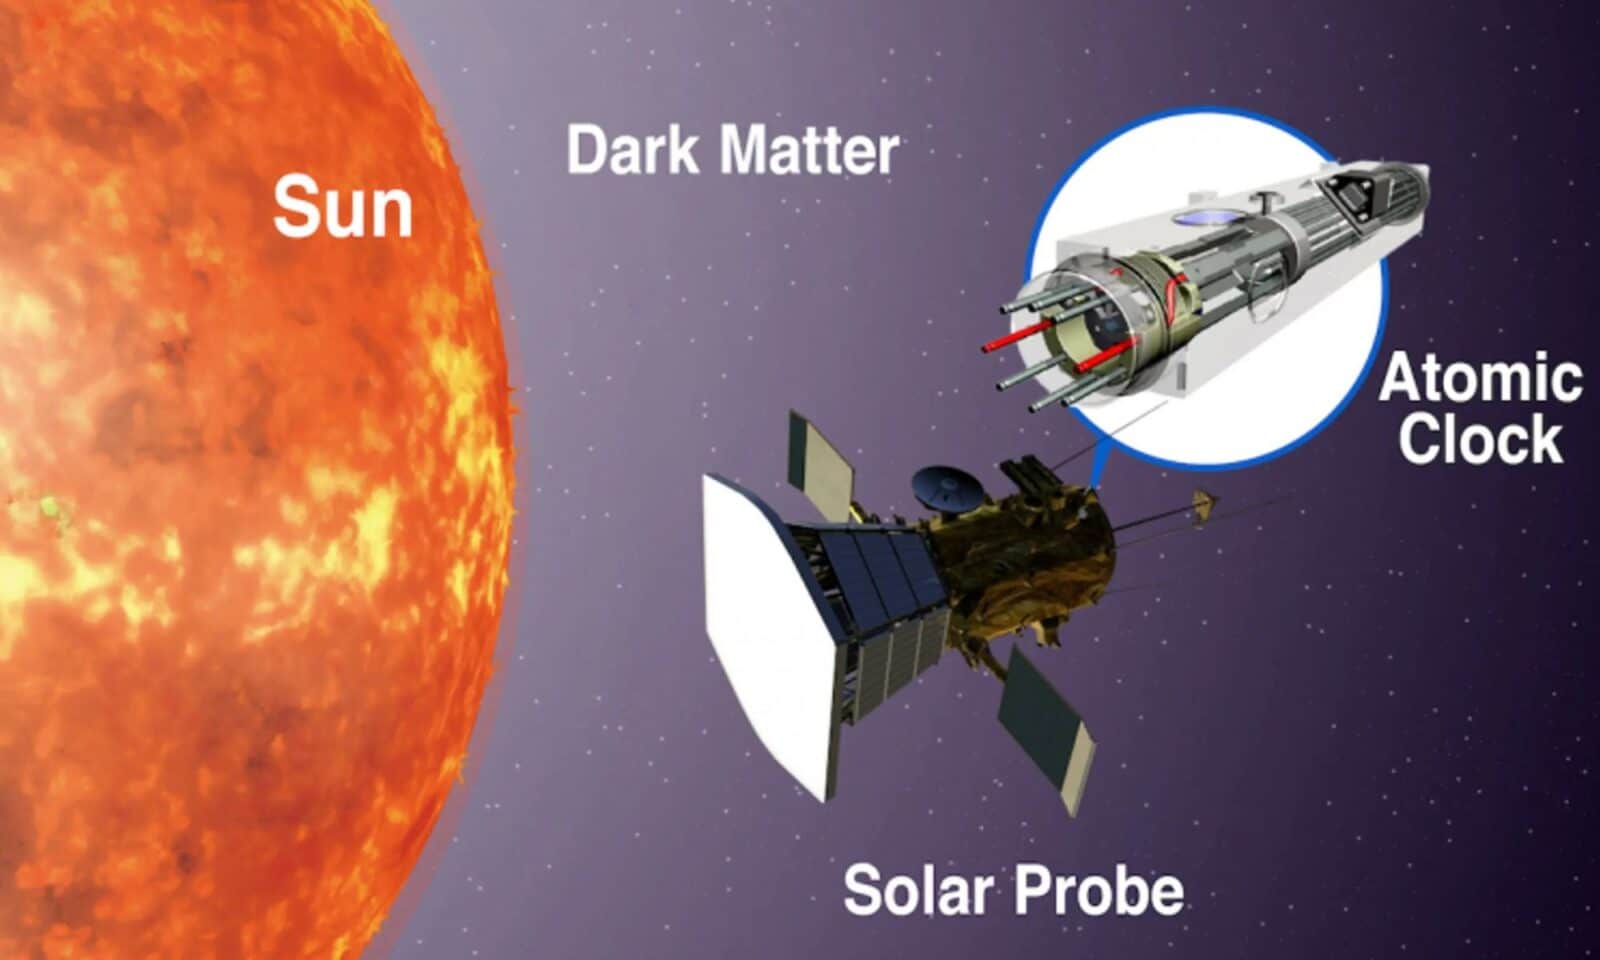 太陽系で原子時計を使い暗黒物質を測定する計画